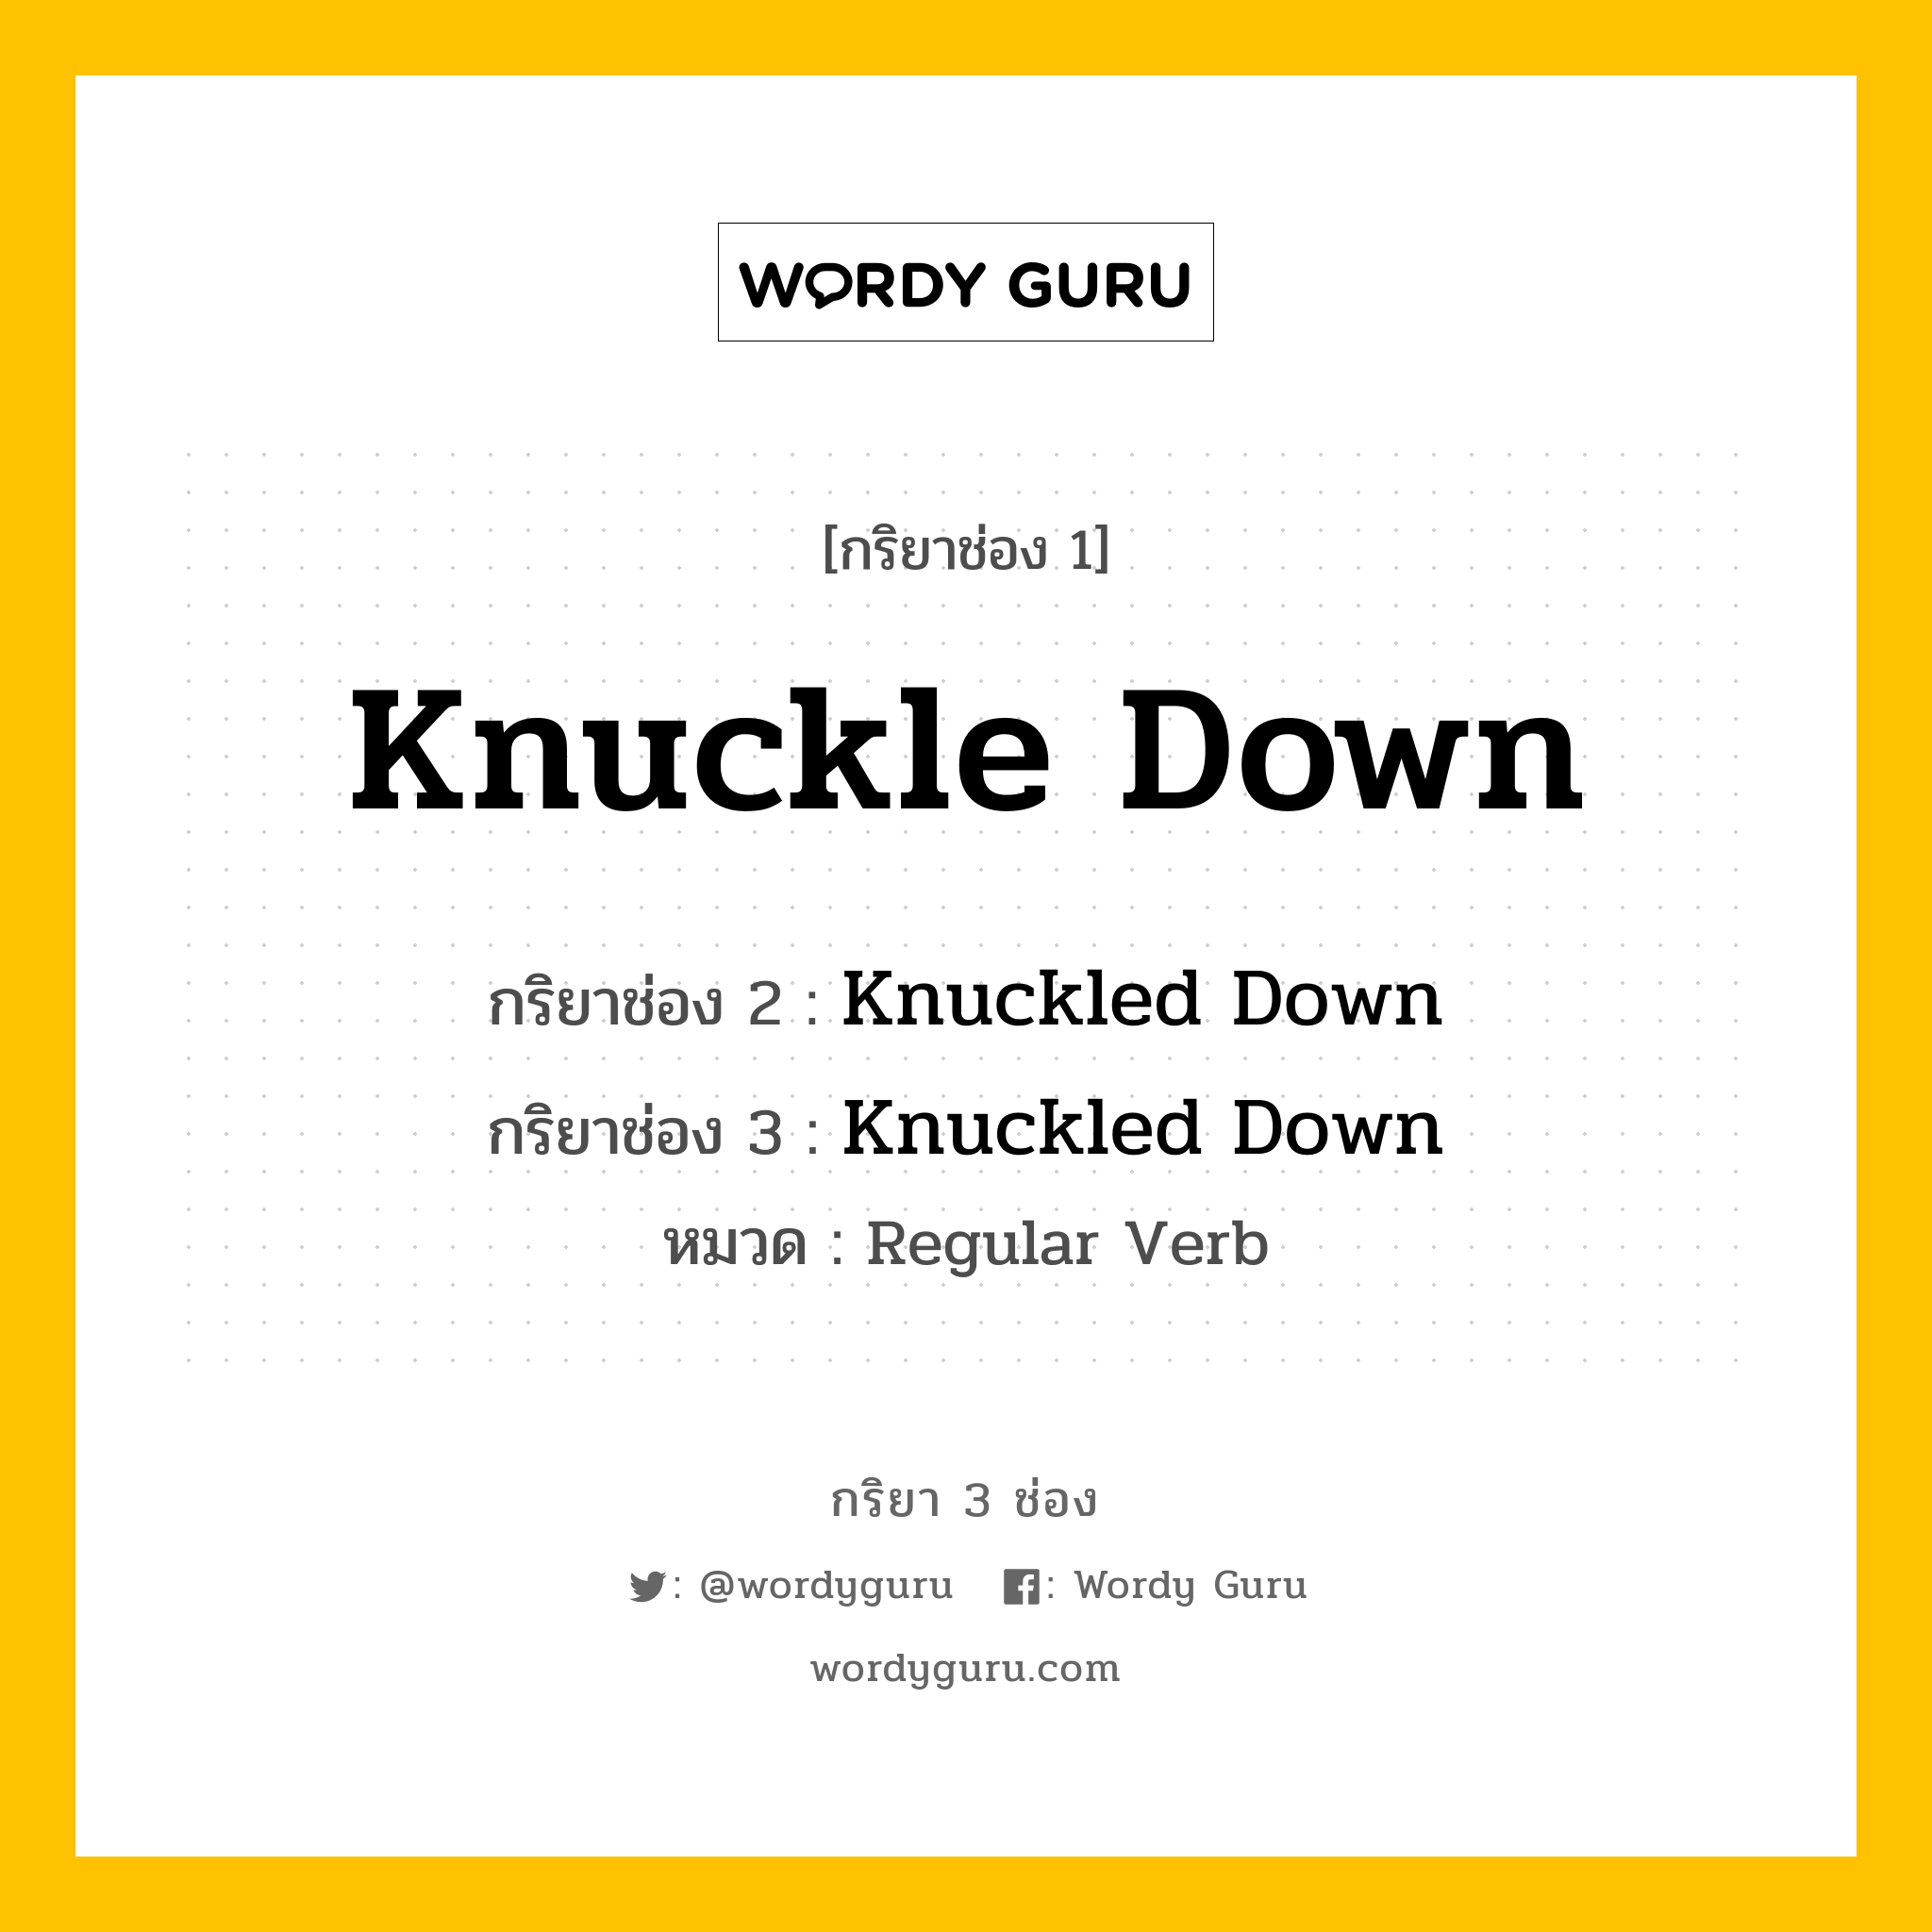 กริยา 3 ช่อง: Knuckle Down ช่อง 2 Knuckle Down ช่อง 3 คืออะไร, กริยาช่อง 1 Knuckle Down กริยาช่อง 2 Knuckled Down กริยาช่อง 3 Knuckled Down หมวด Regular Verb หมวด Regular Verb